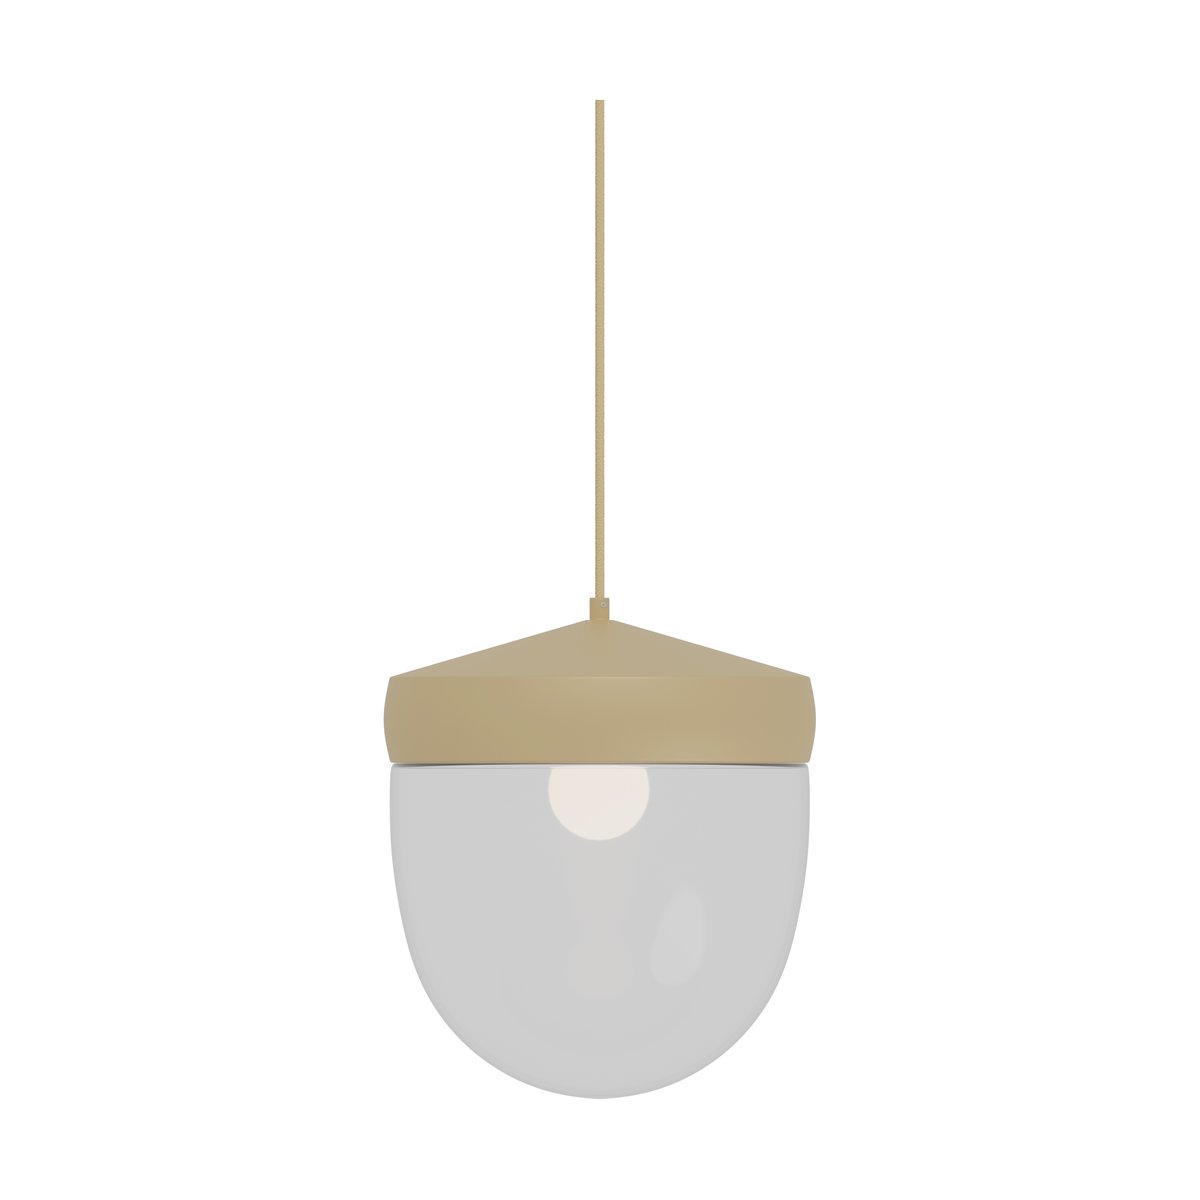 Noon Pan hanglamp helder 30 cm Beige-lichtbeige